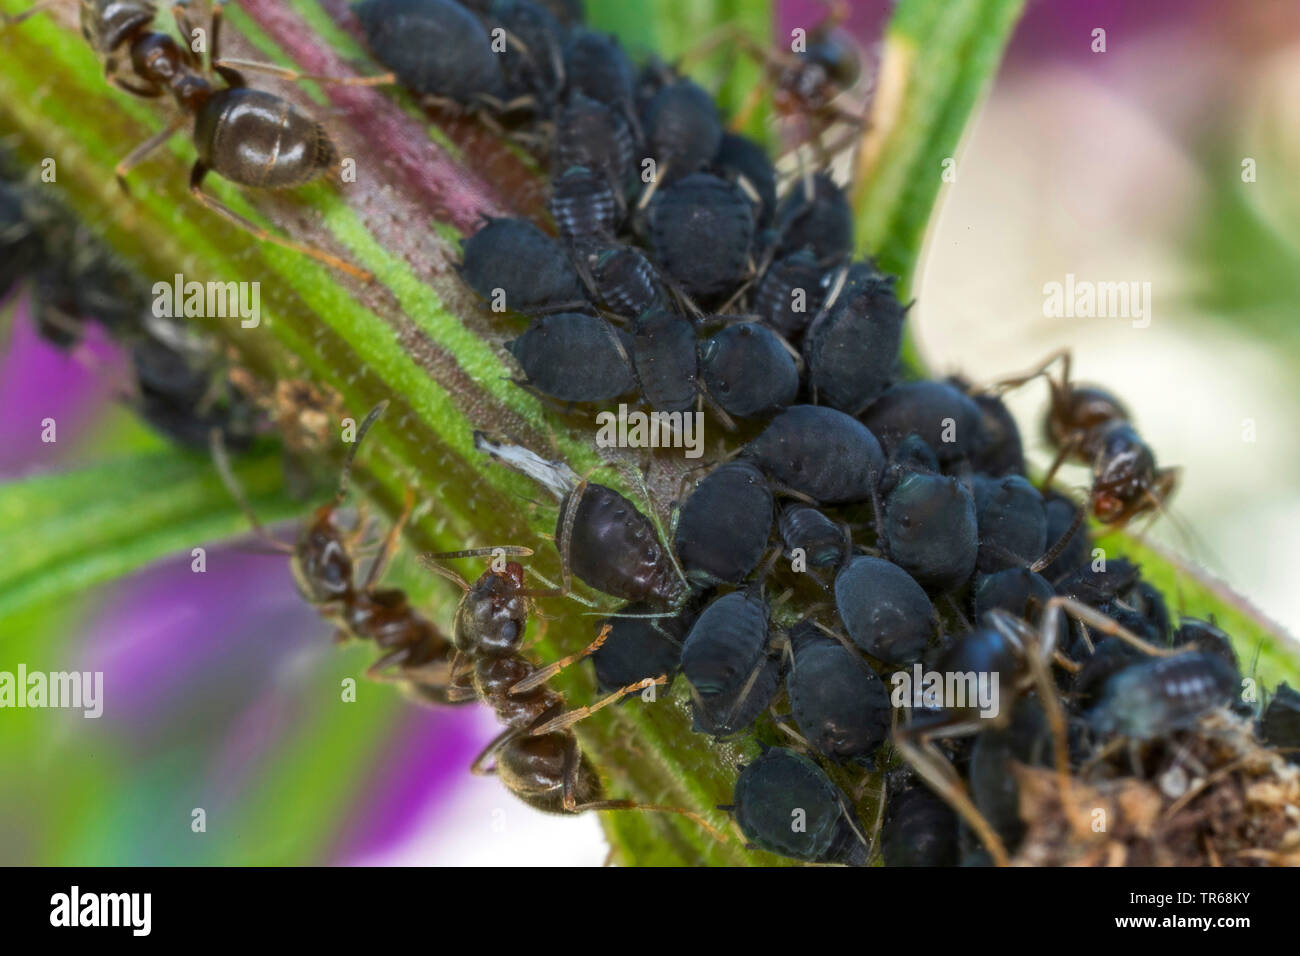 Puceron noir de la fève, les simulies, wayame noir (Aphis fabae), le haricot noir étant détenu par les pucerons, fourmis jardin Mecklembourg-Poméranie-Occidentale, Allemagne Banque D'Images